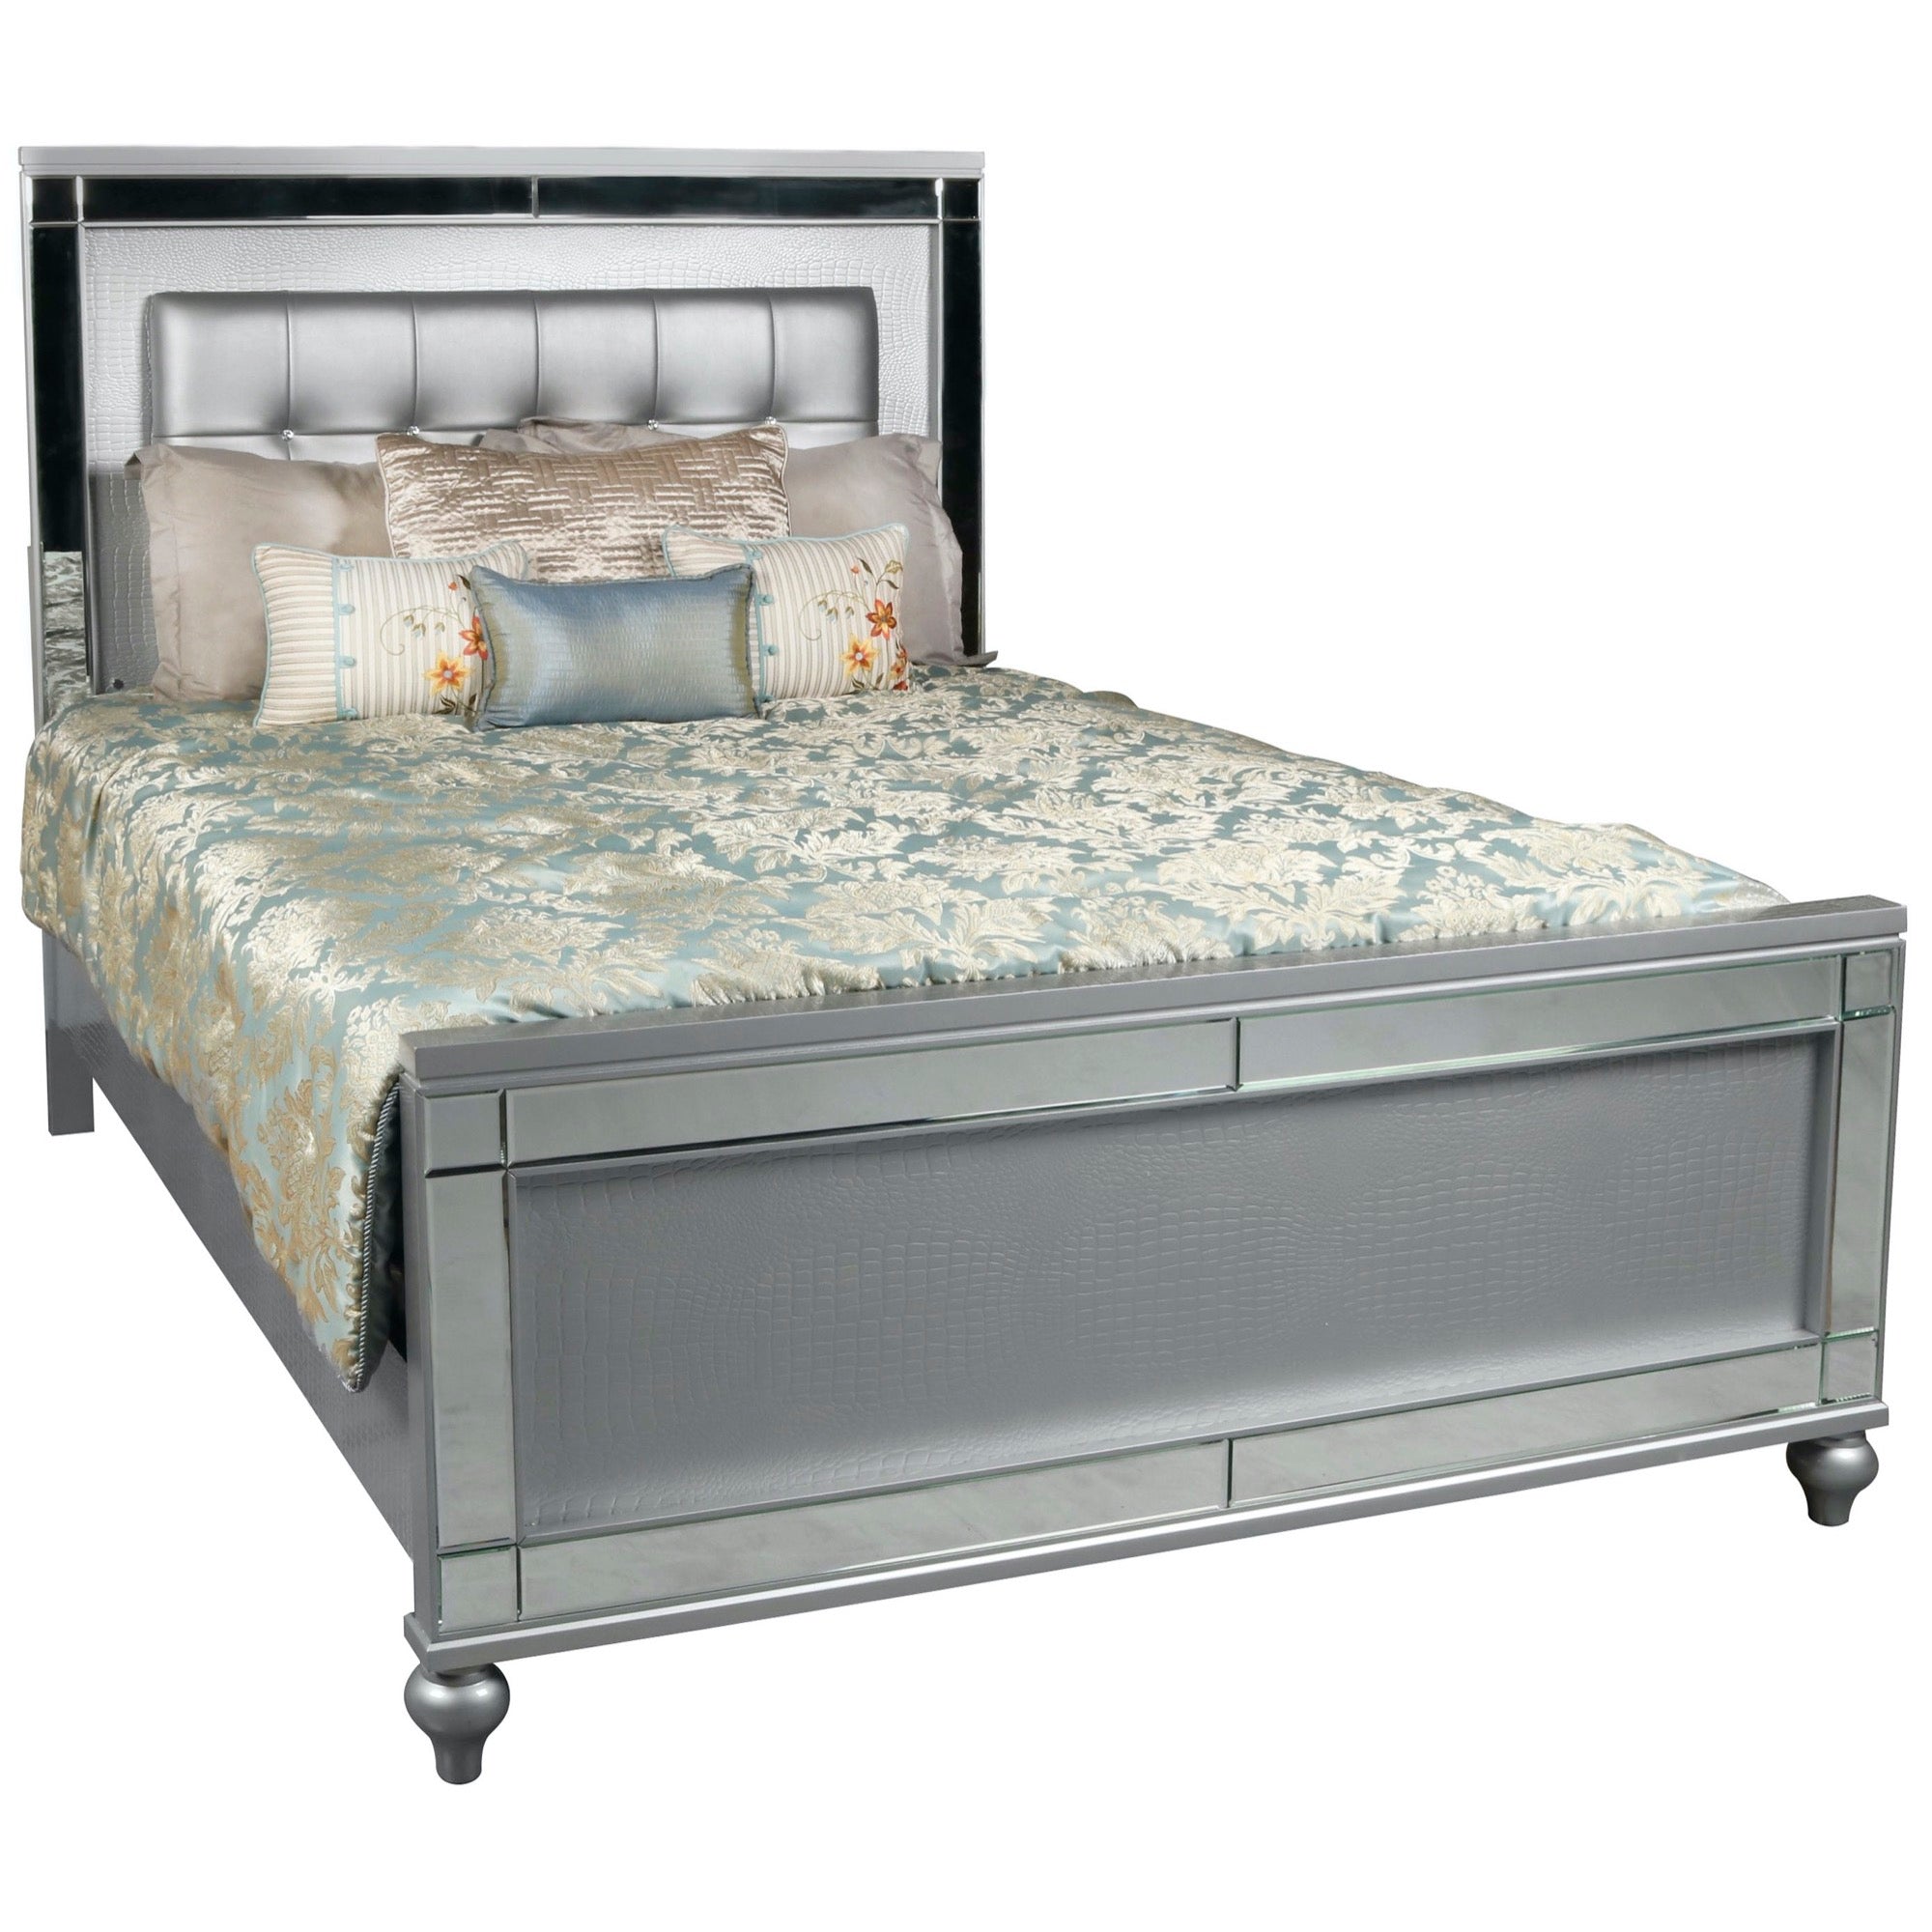 Tulsa Queen 5 Piece Bedroom Set – Adams Furniture